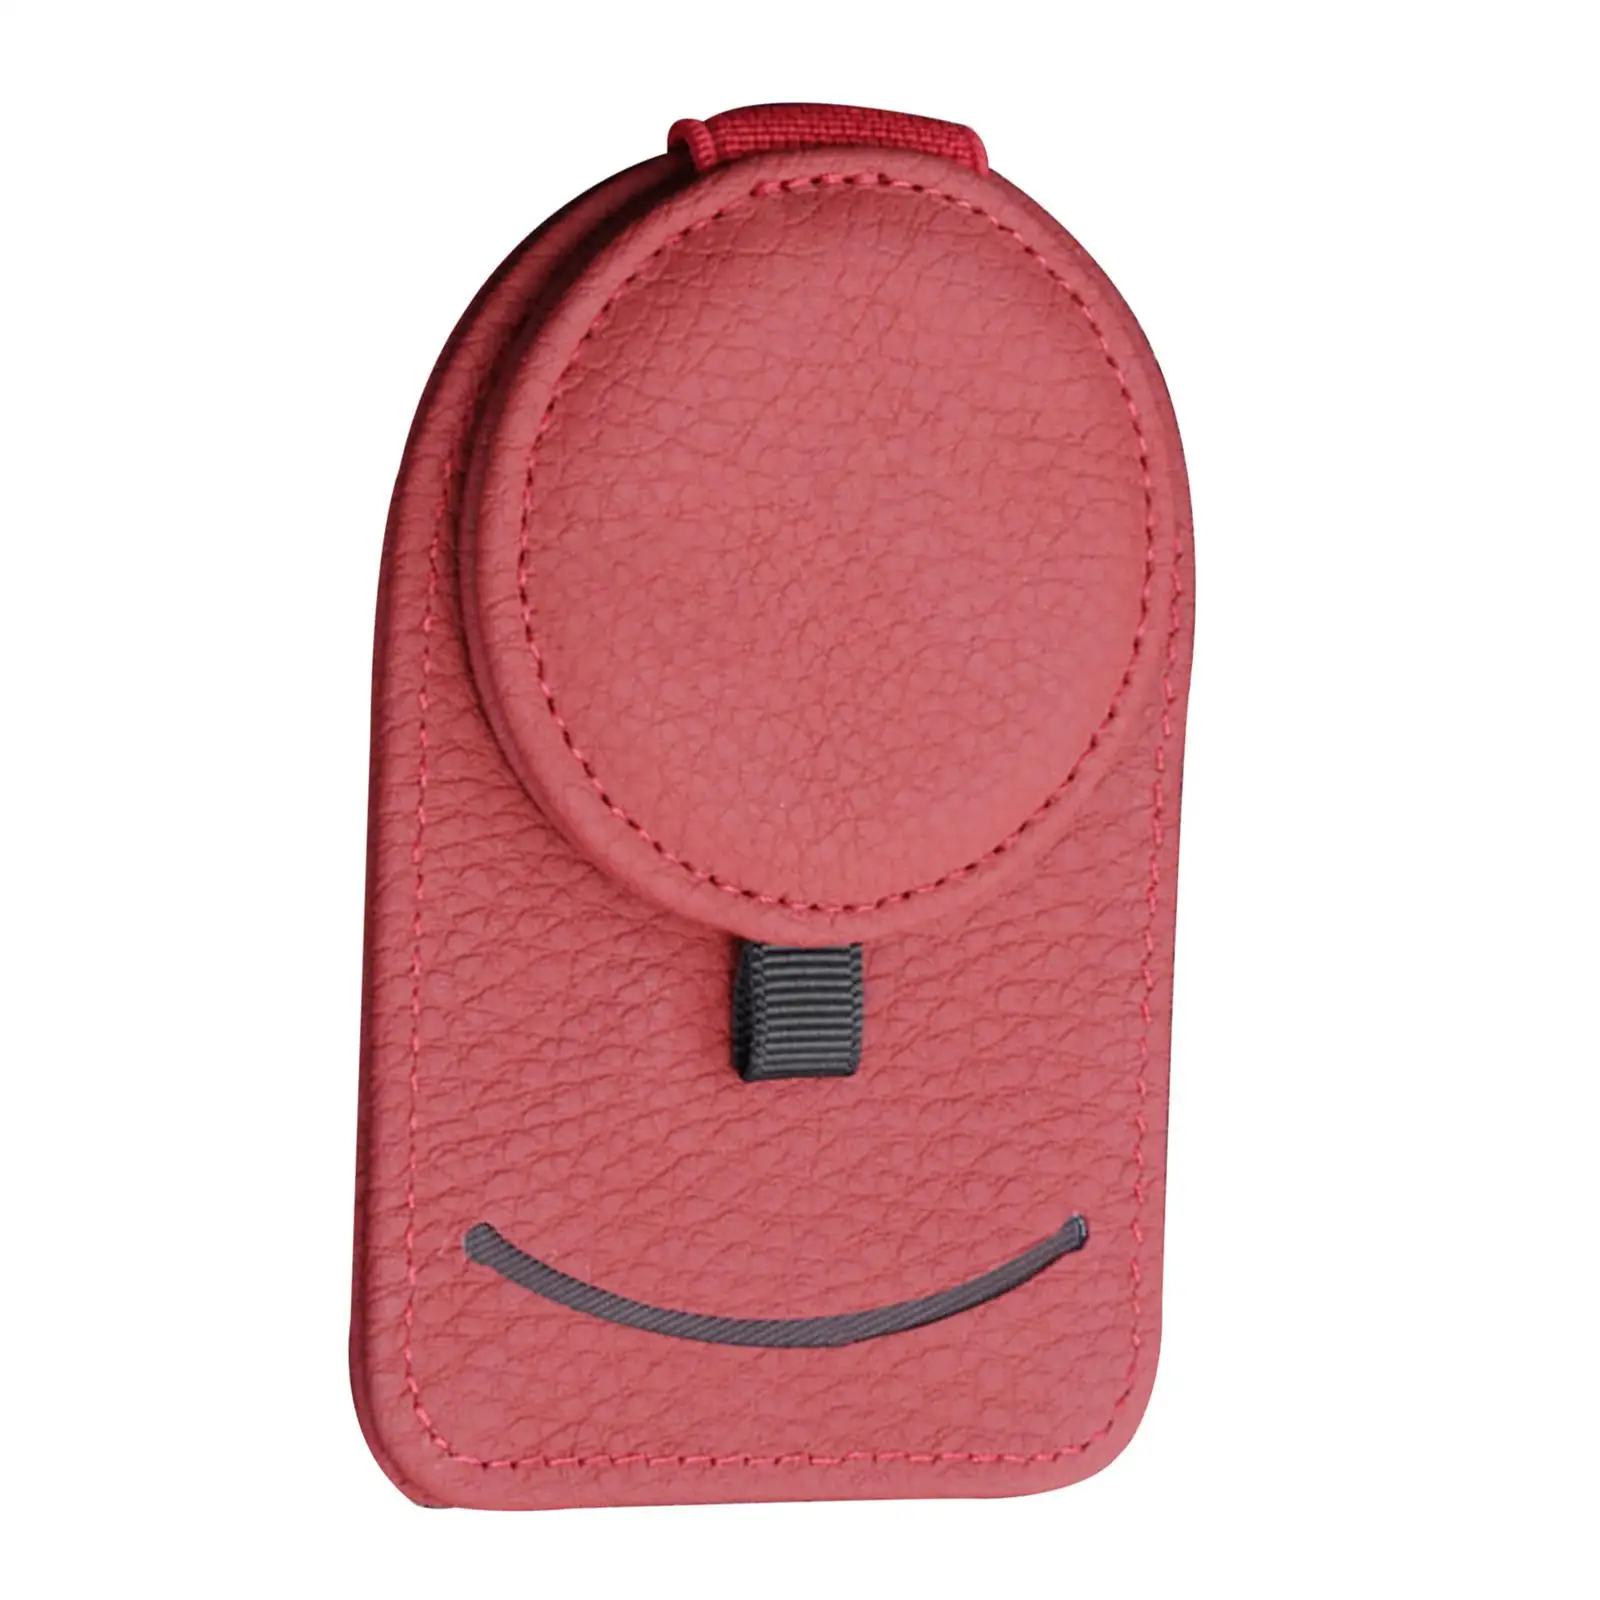 Holder clip glasses pen portable for car sun visor card storage